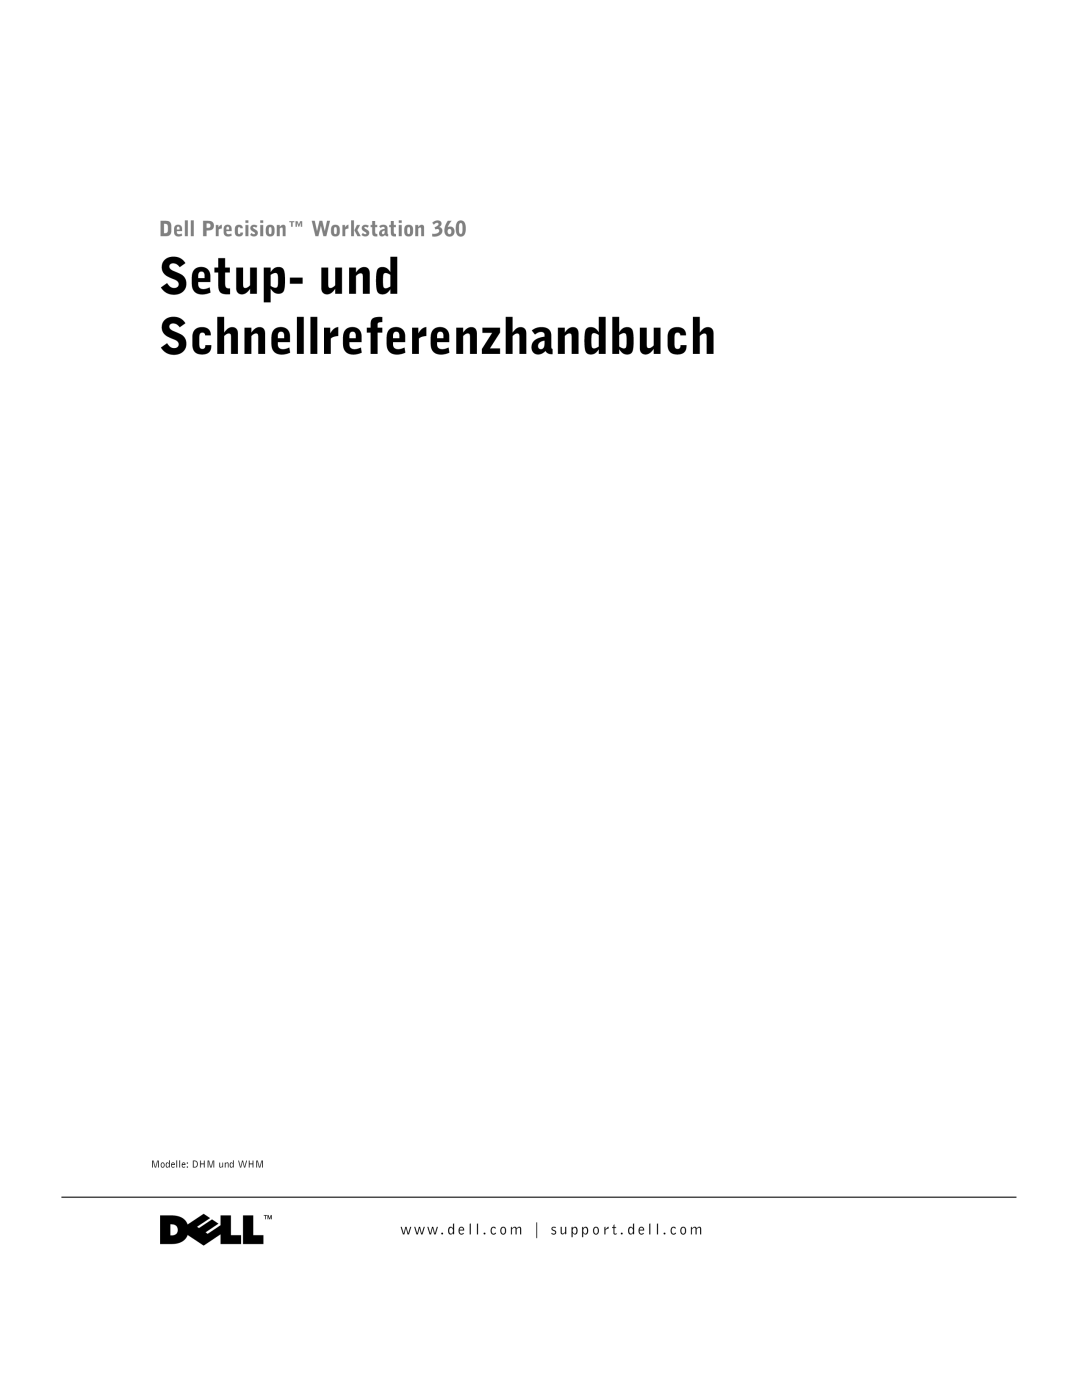 Dell F0276 manual Setup- und Schnellreferenzhandbuch 